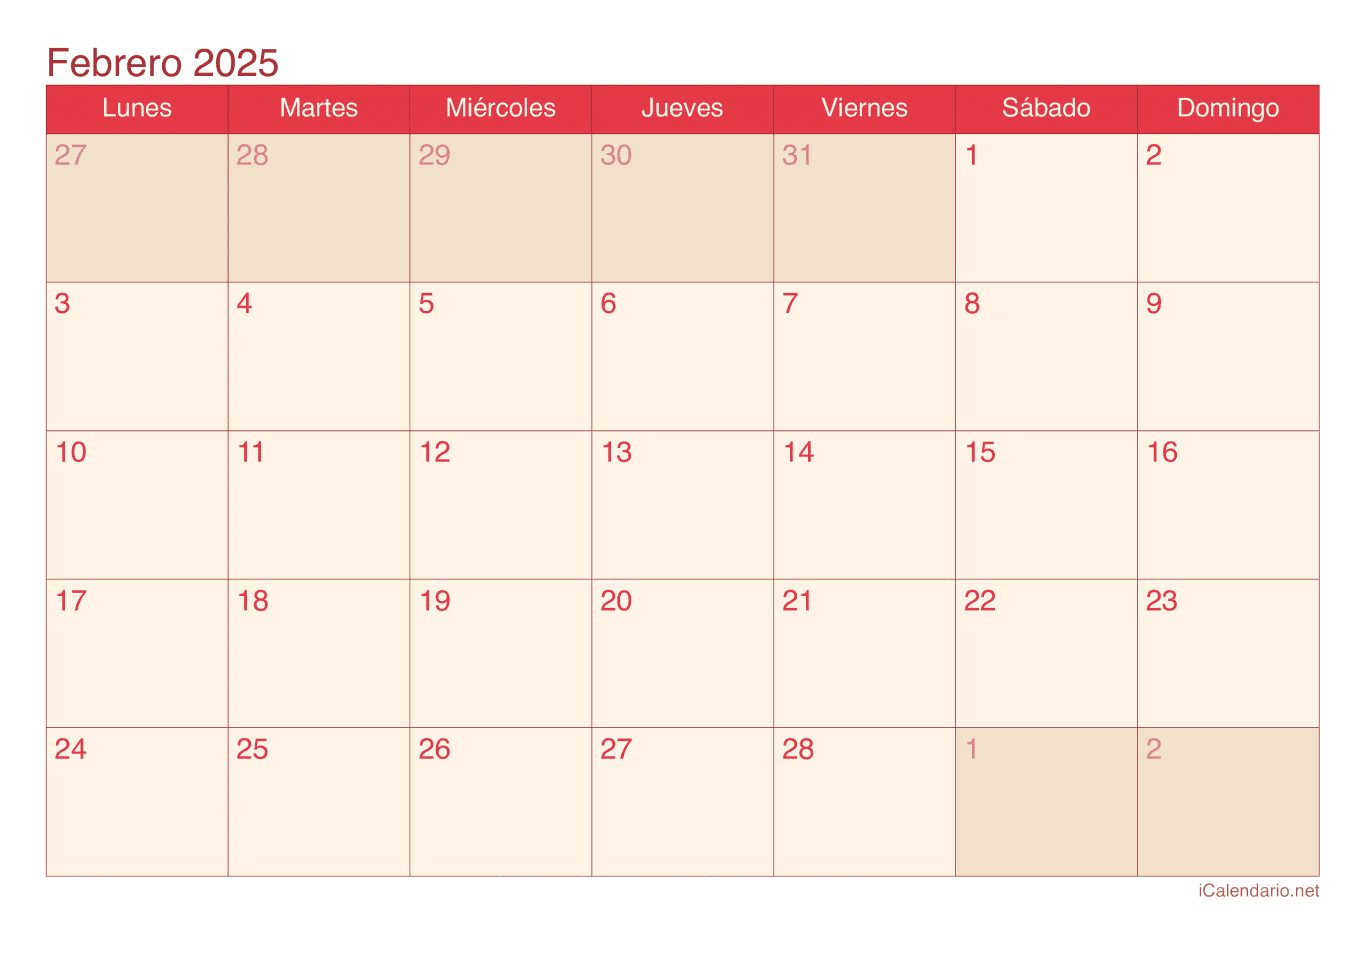 Calendario de febrero 2025 - Cherry